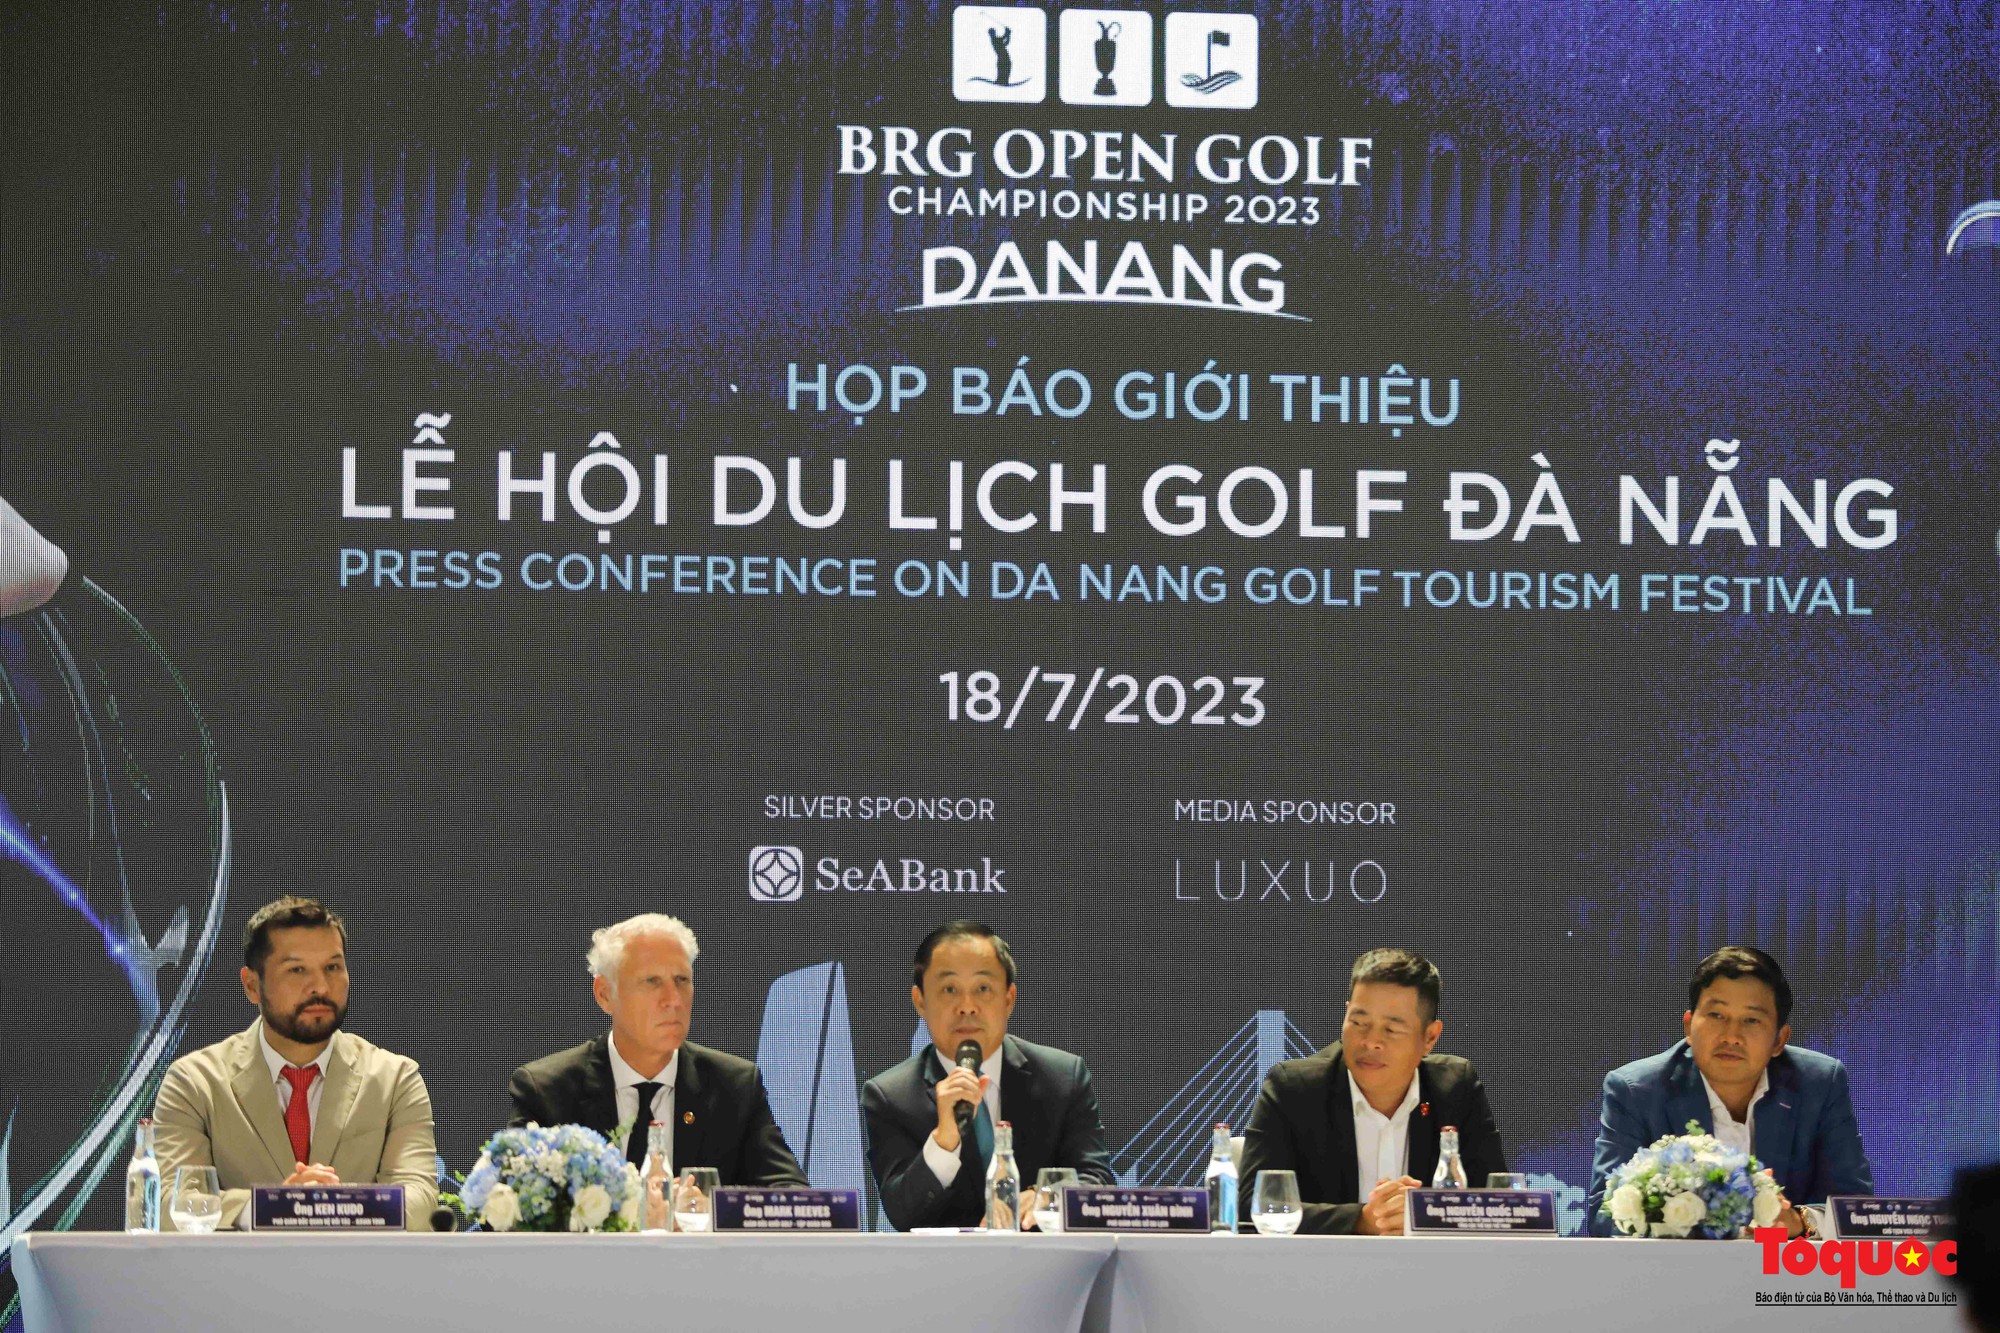 Lễ hội du lịch golf Đà Nẵng 2023 với hàng loạt hoạt động hấp dẫn - Ảnh 1.